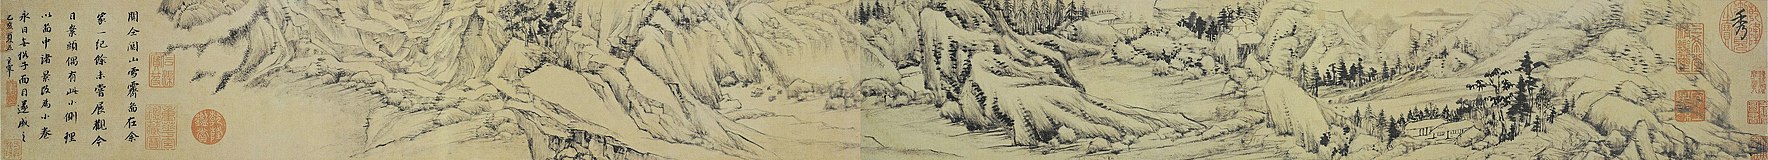 Opklaring na de sneeuw boven een bergpas (1635) door Dong Qichang[f]